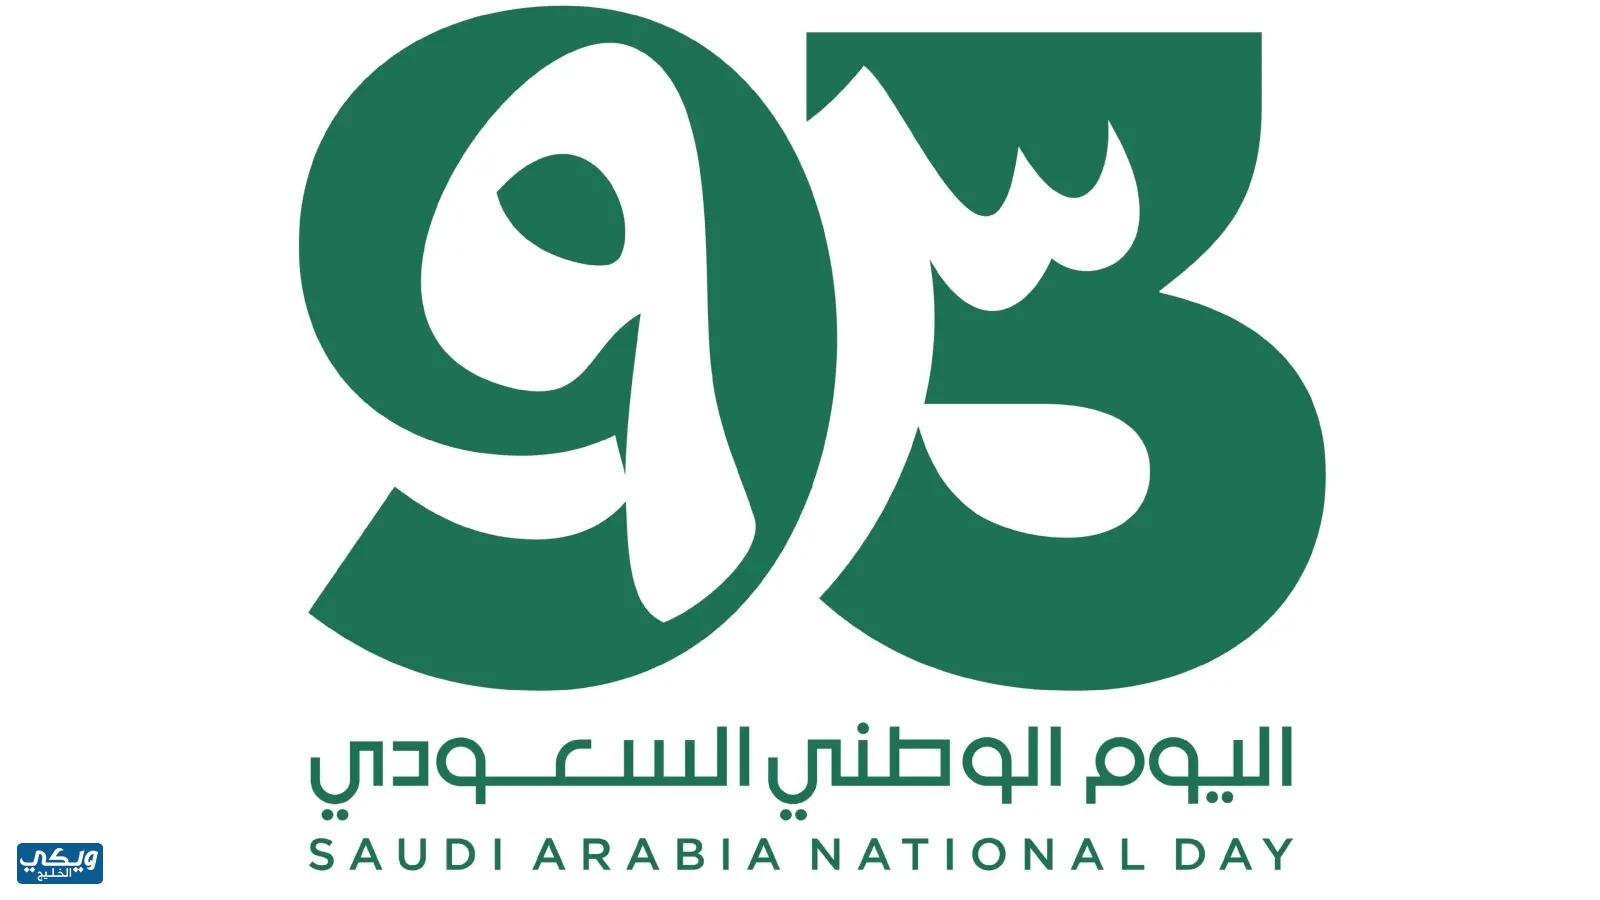 خلفيات عن اليوم الوطني السعودي 93